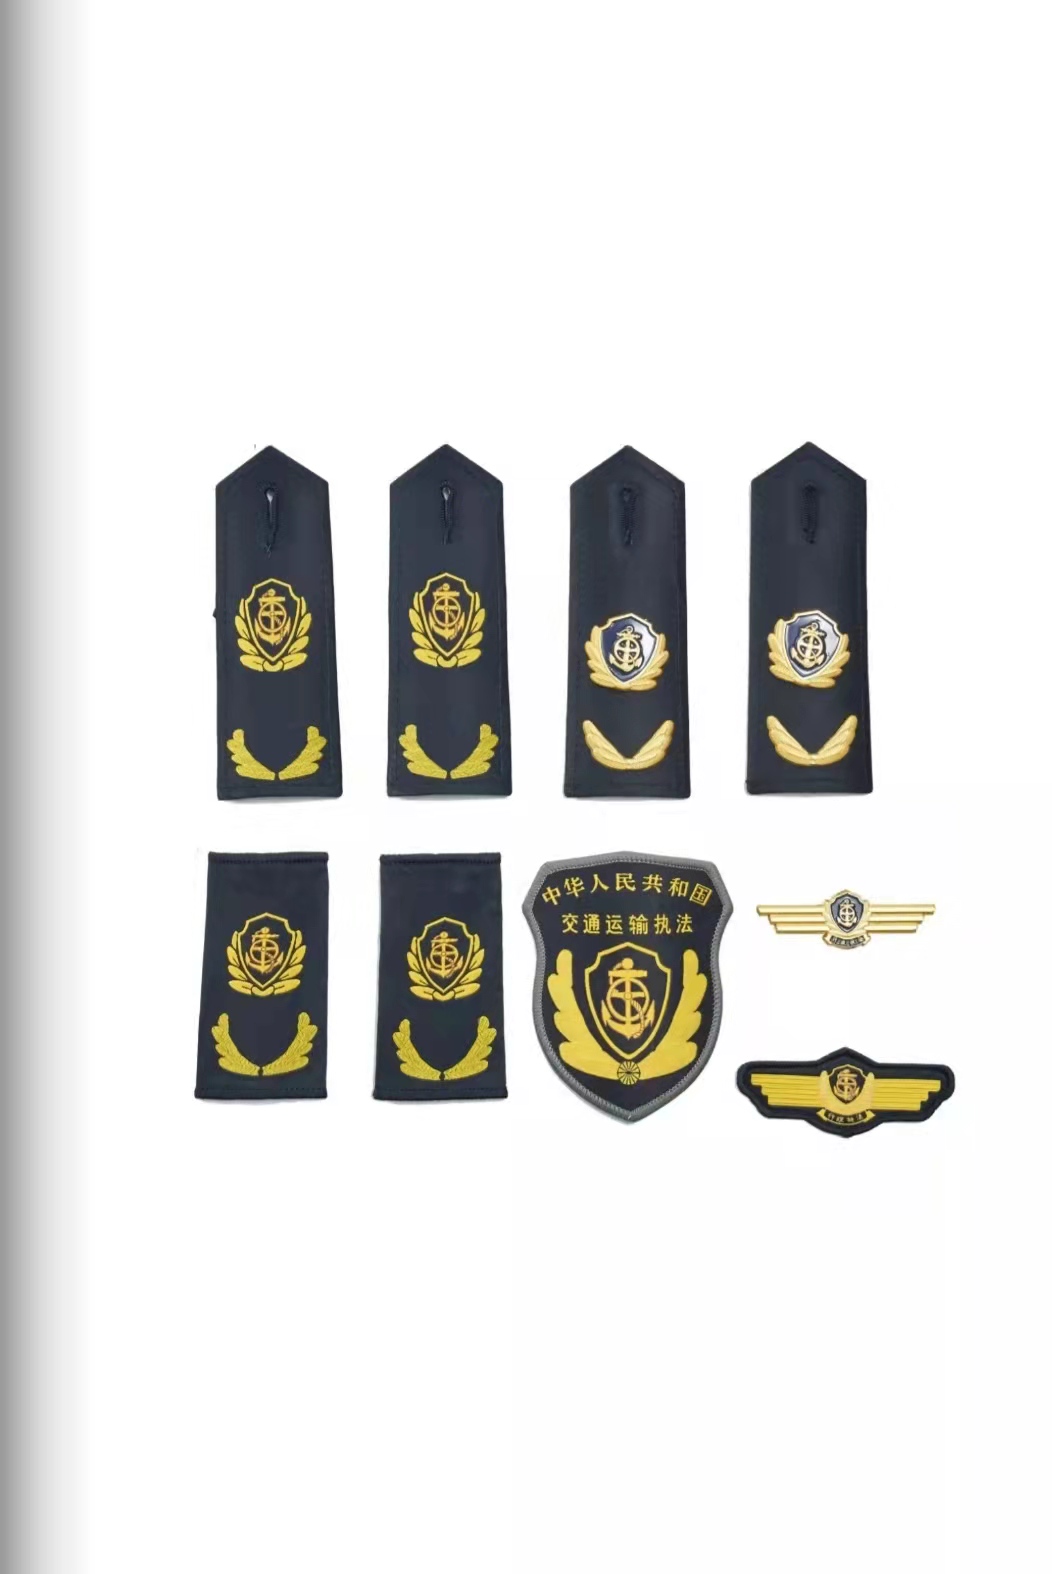 呼伦贝尔六部门统一交通运输执法服装标志